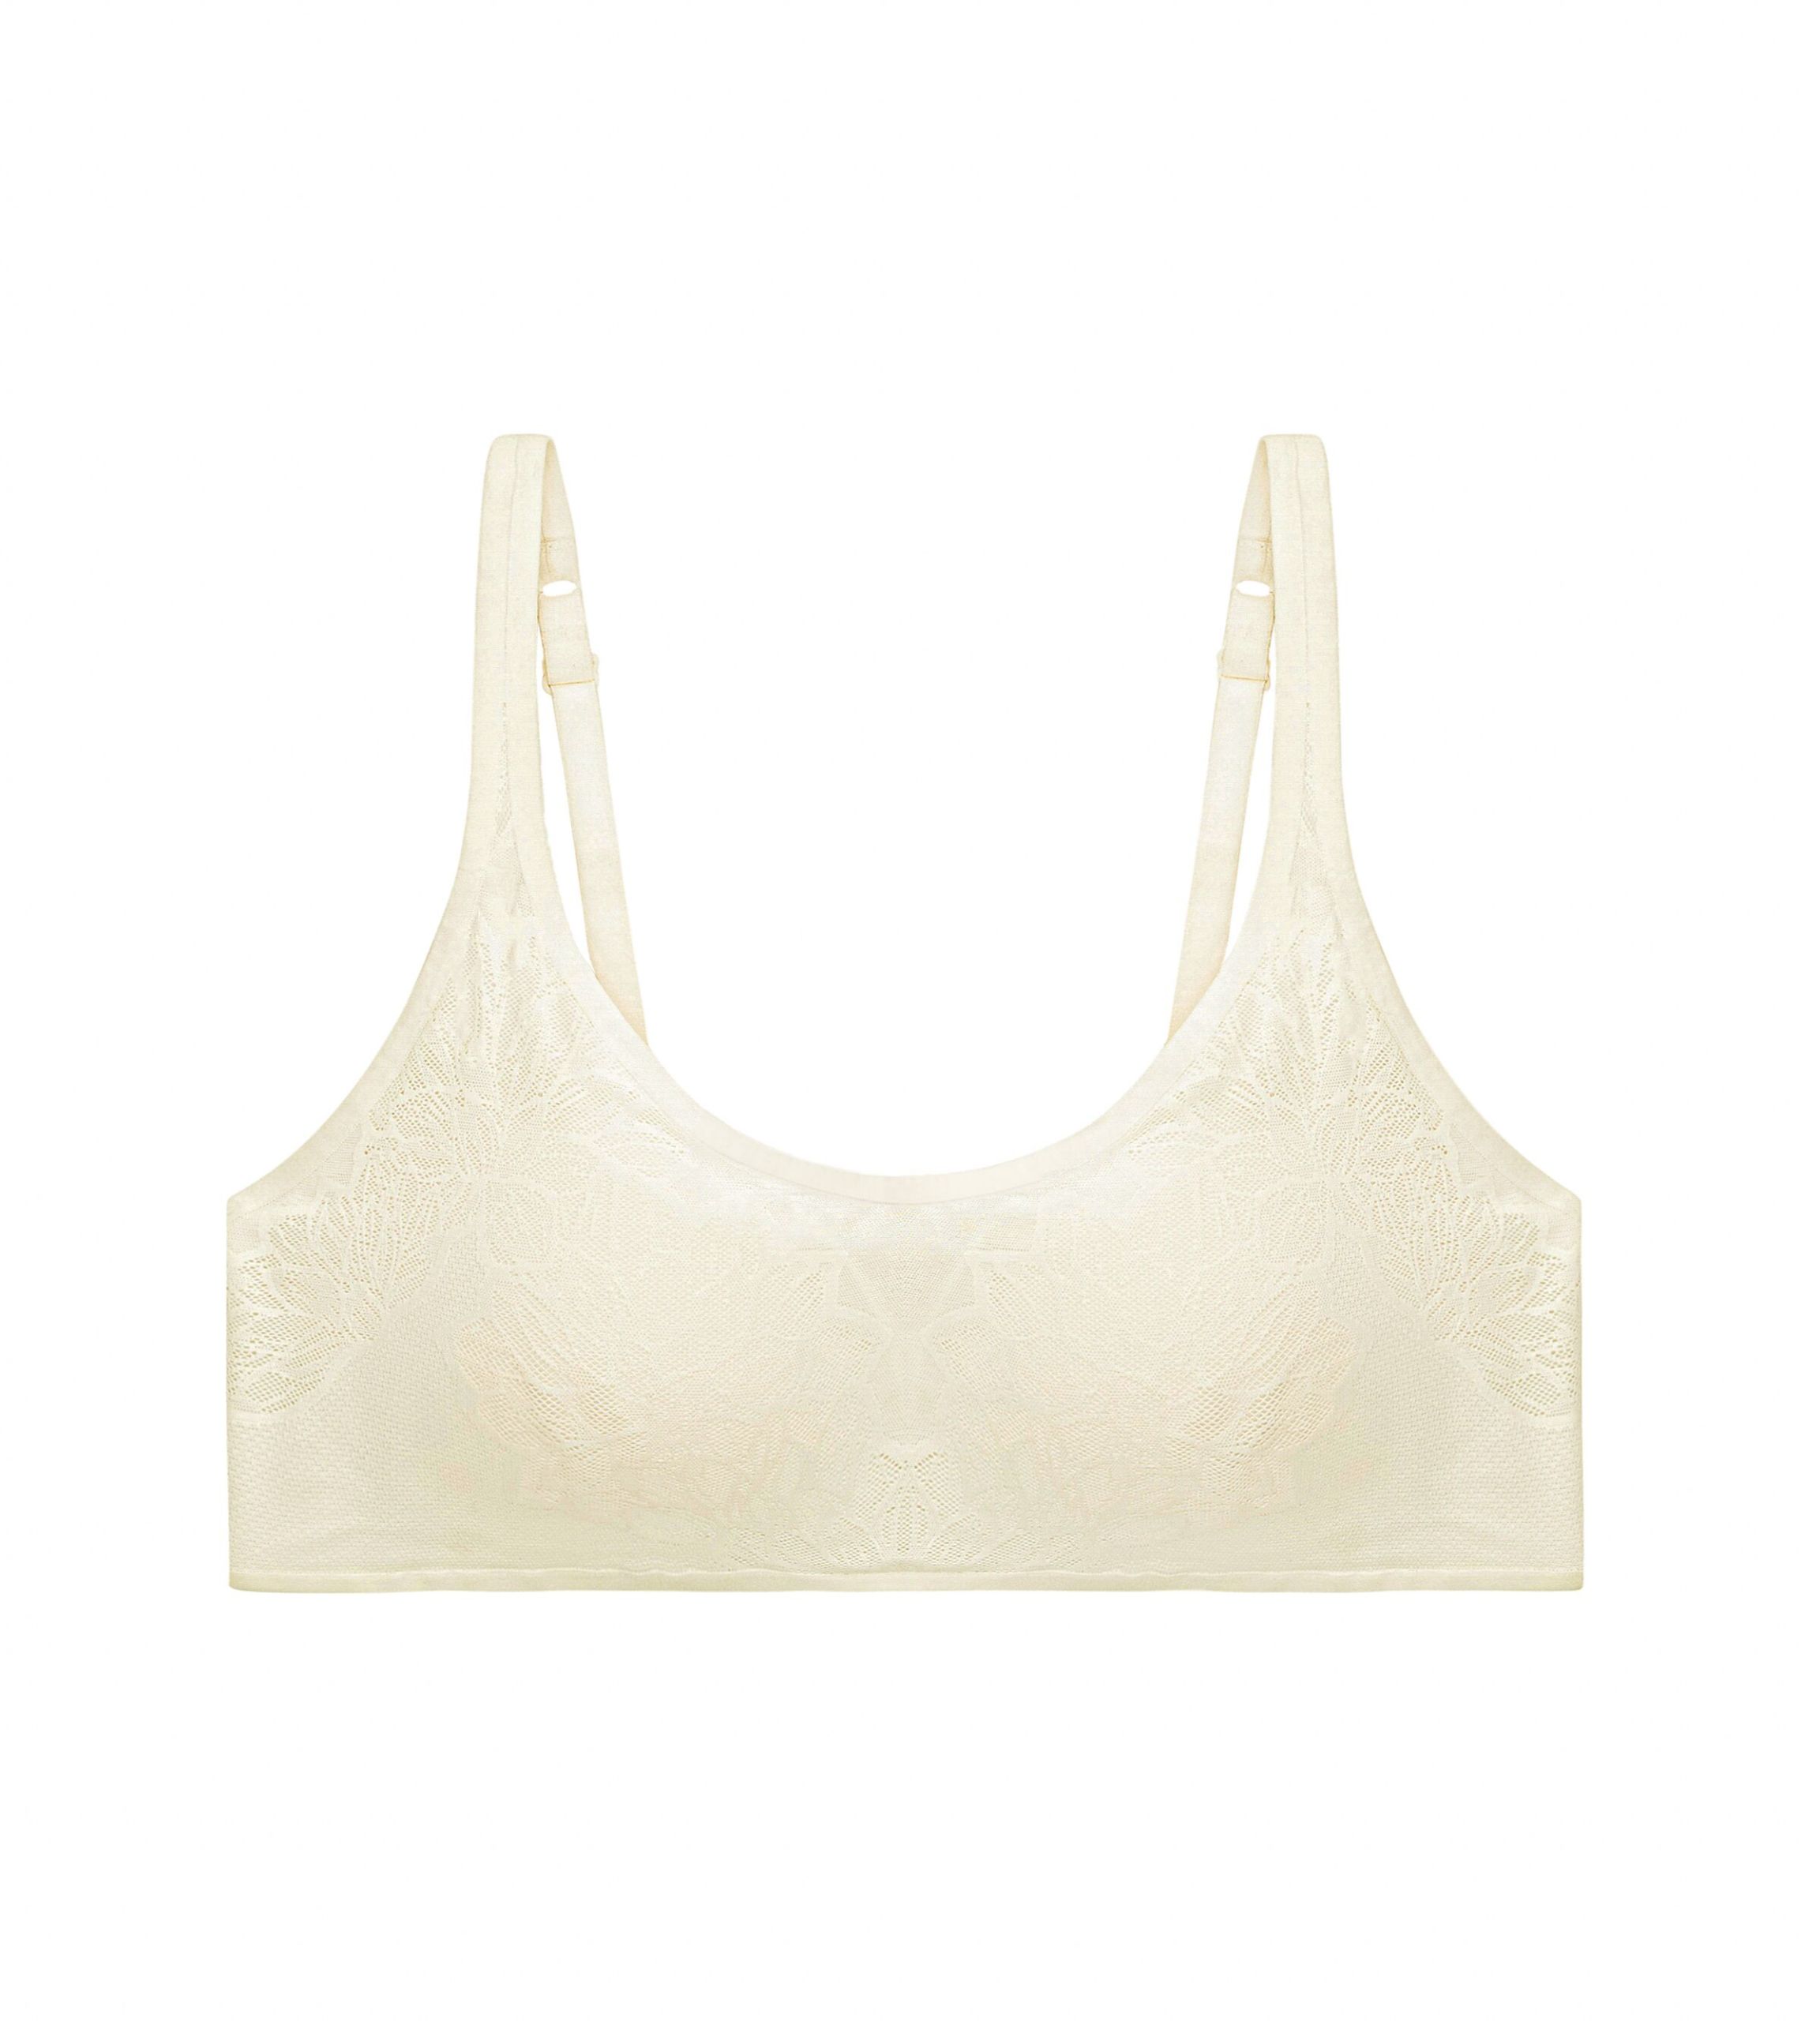 Padded Bras - Triumph underwear − women's lingerie, shapewear & more